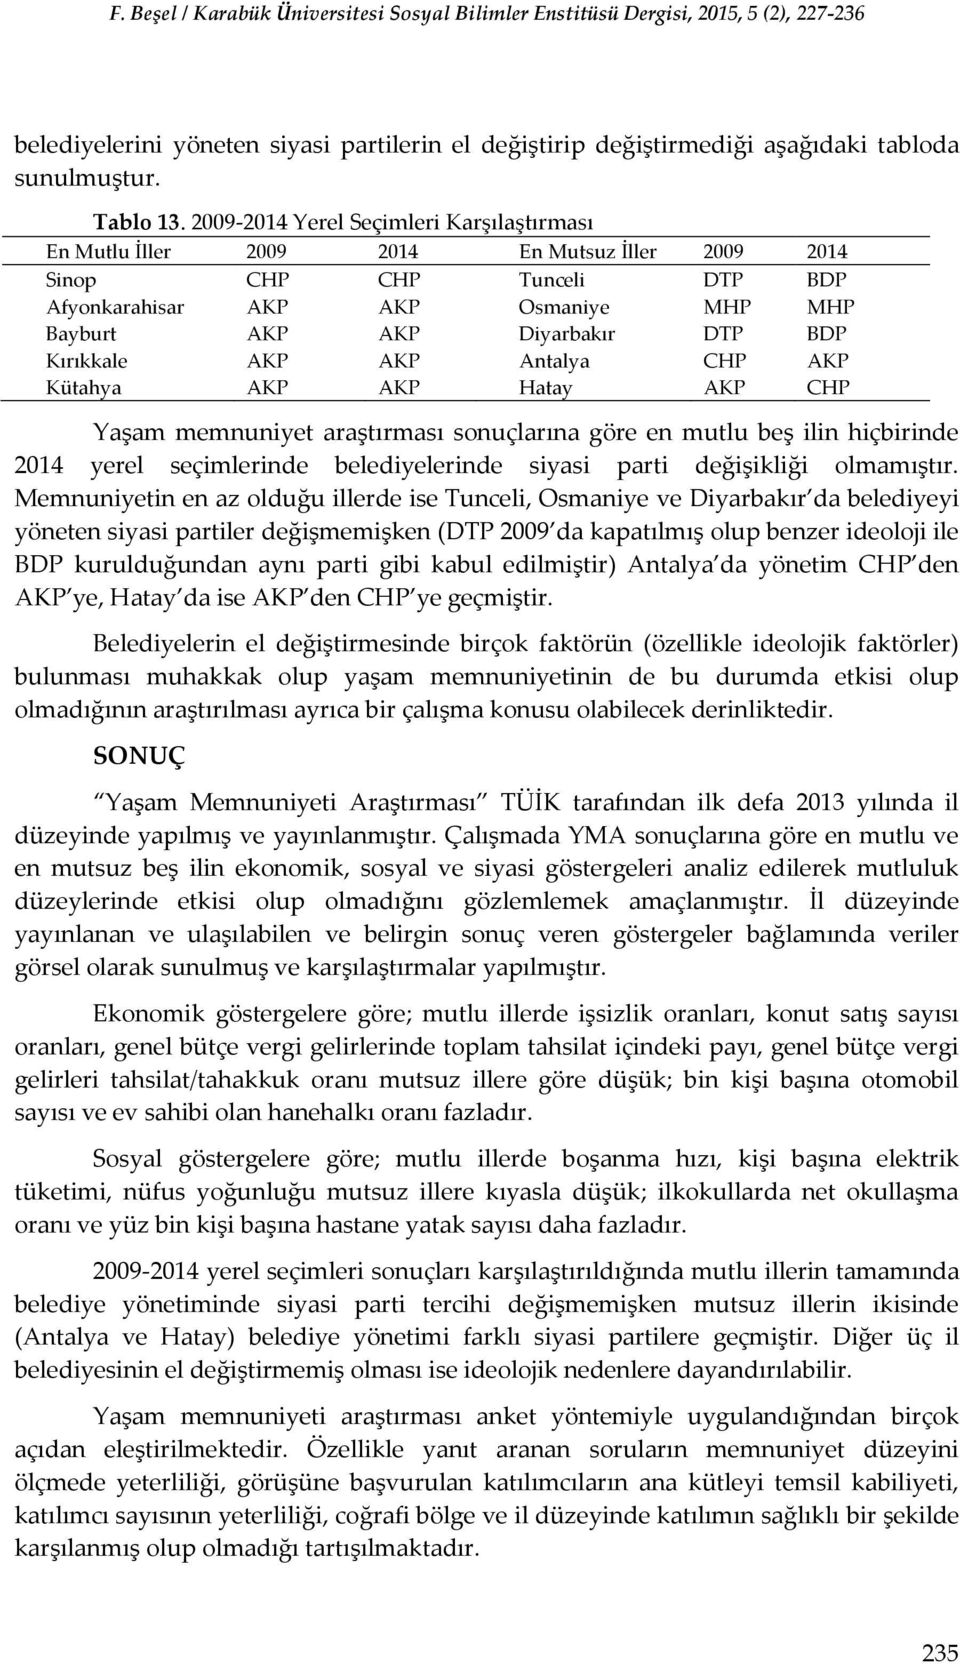 Kırıkkale AKP AKP Antalya CHP AKP Kütahya AKP AKP Hatay AKP CHP Yaşam memnuniyet araştırması sonuçlarına göre en mutlu beş ilin hiçbirinde 2014 yerel seçimlerinde belediyelerinde siyasi parti